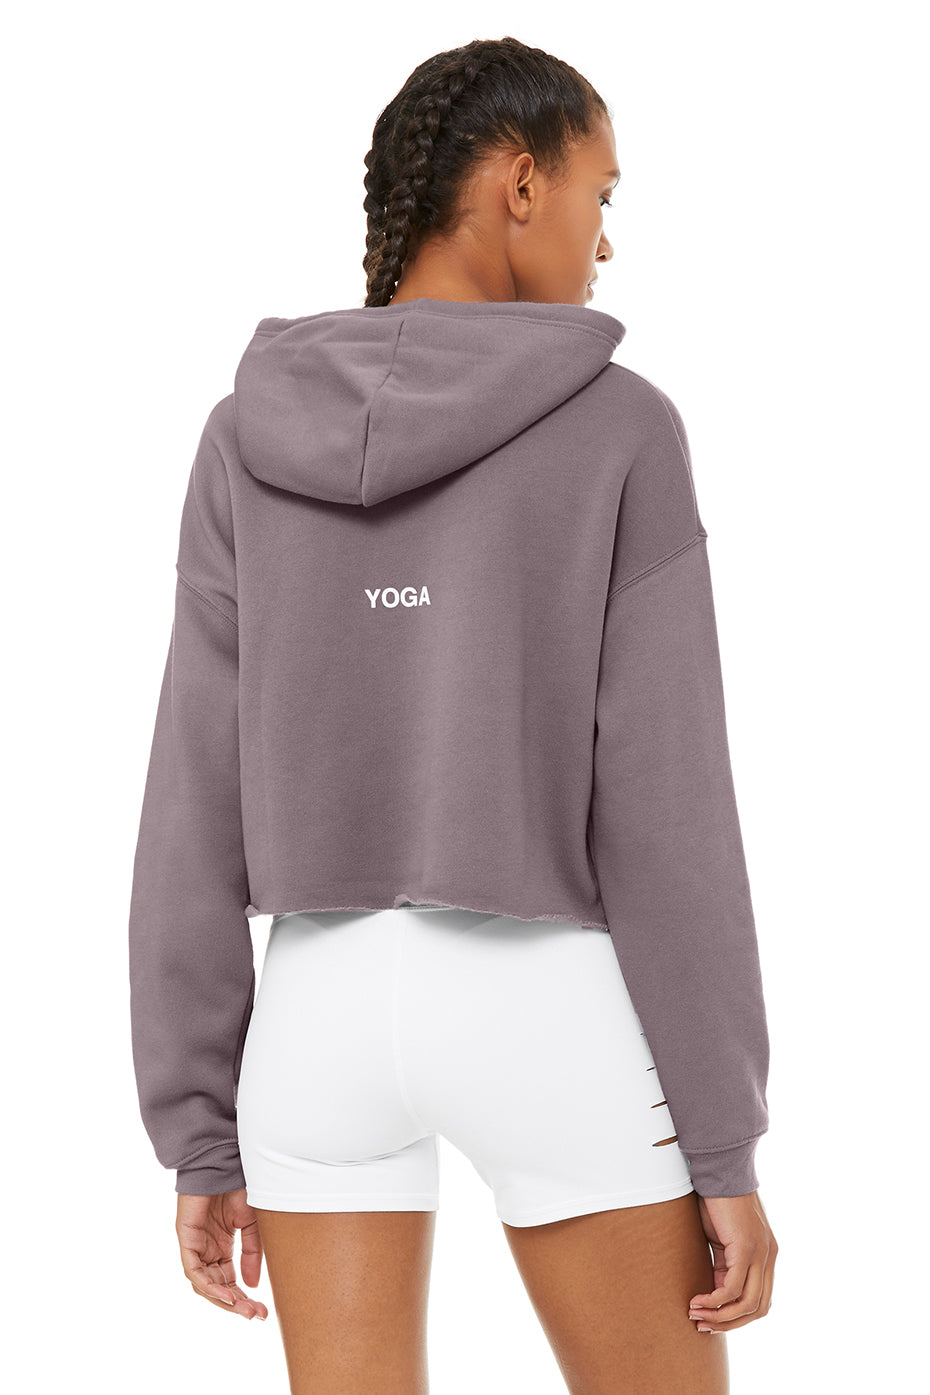 alo yoga cropped sweatshirt